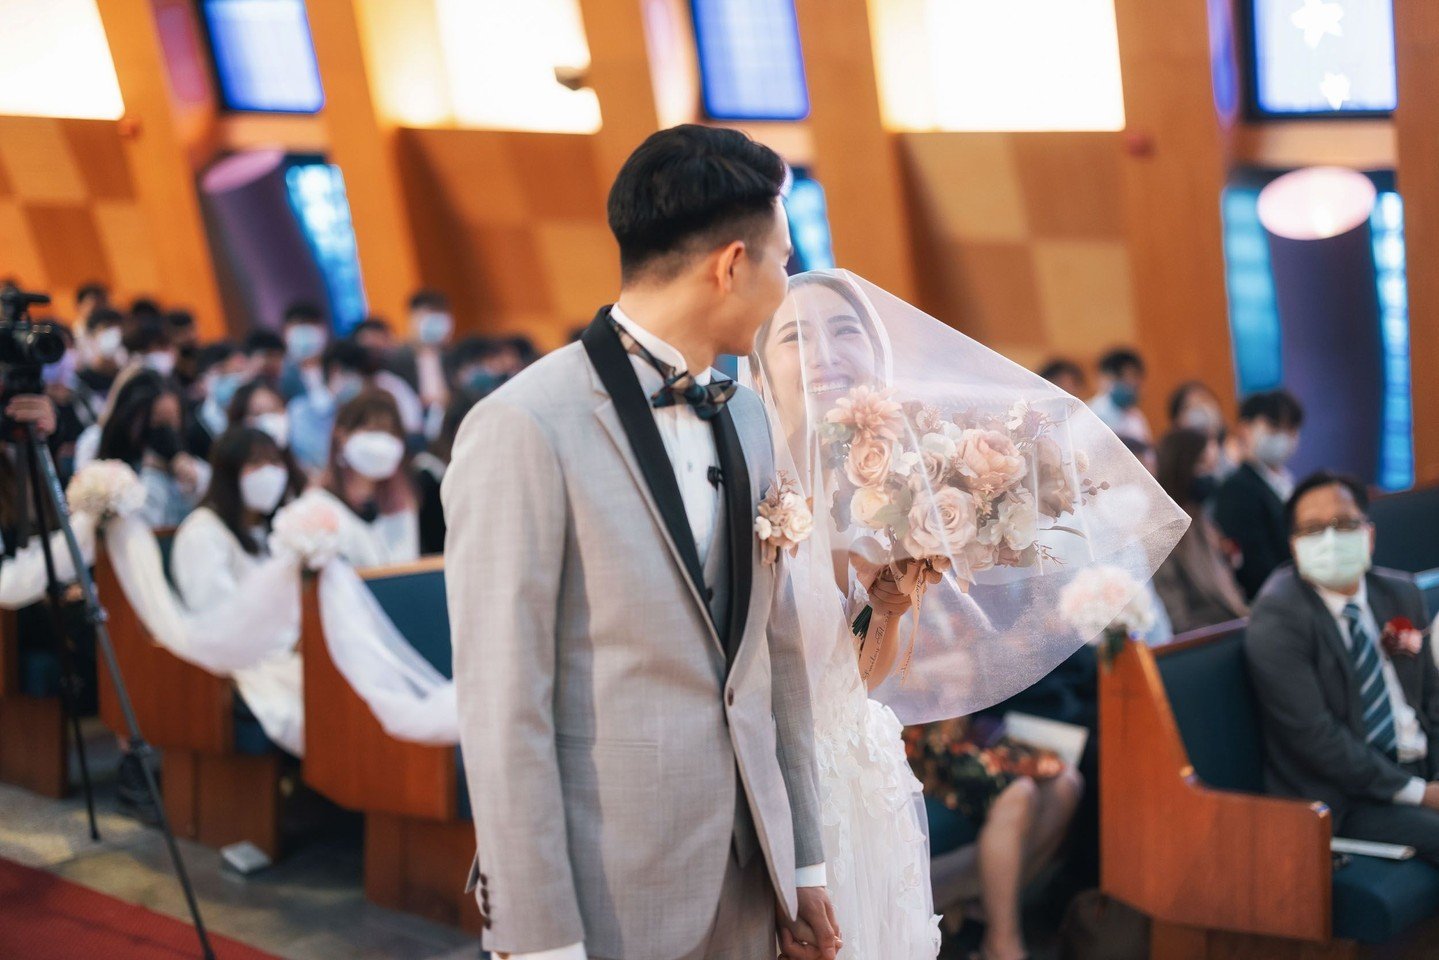 麥斯光流 The.M.Photo Wedding Day⁠
⁠
Web : www.themphoto.net⁠
Facebook : www.facebook.com/themphoto⁠
Instagram : @themphoto.wedding
Instagram (official): @themphoto.official 
⁠
#香港婚禮 #香港婚禮攝影師#麥斯光流#人像攝影 #hongkong #hongkongphotographer #hongkongwedding #wed